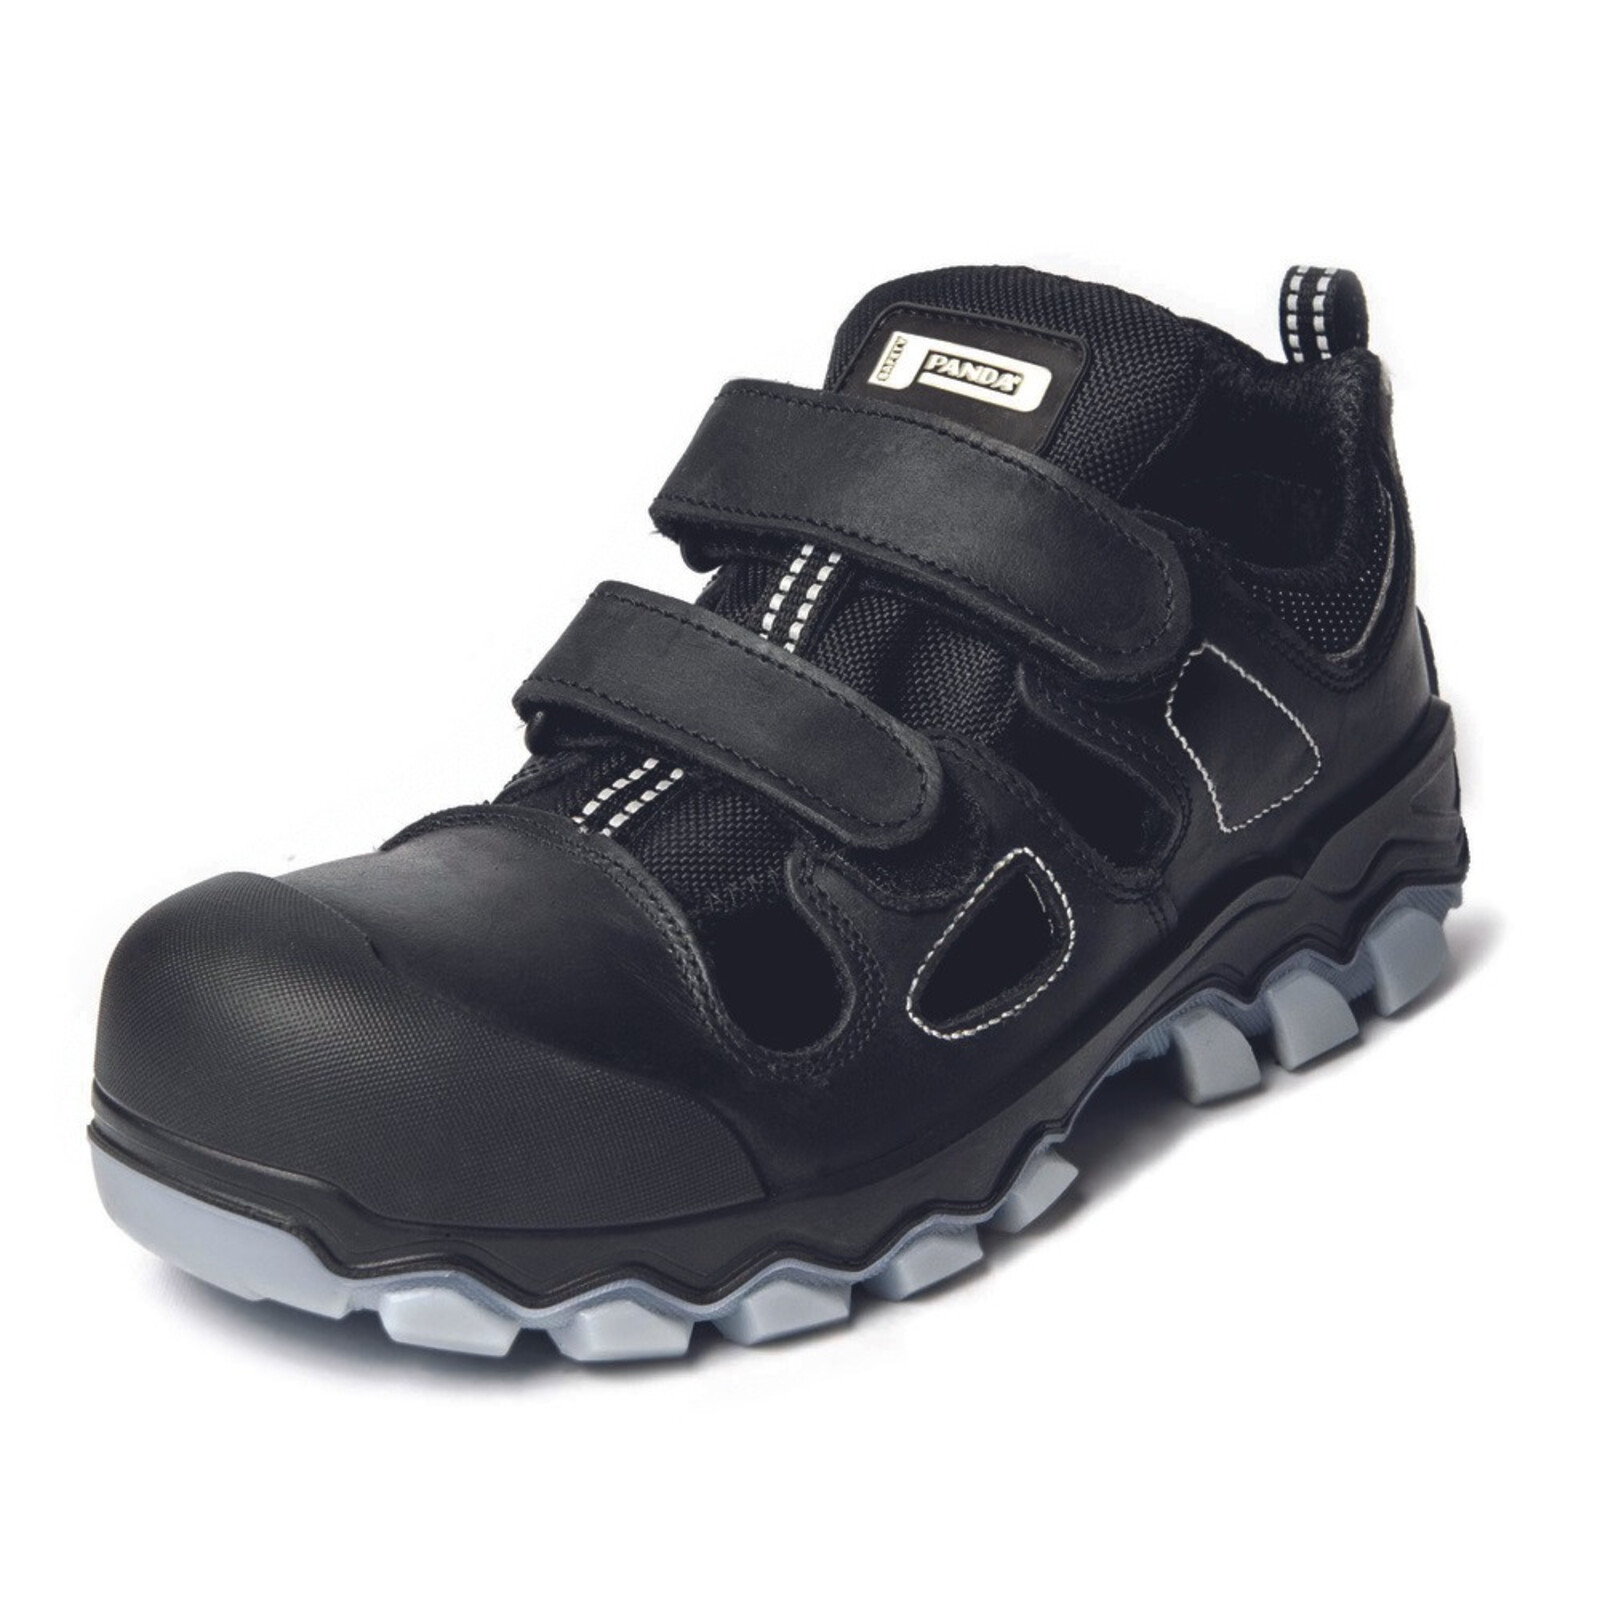 Bezpečnostné sandále Panda Techo No. Two MF S1P SRC - veľkosť: 38, farba: čierna/sivá